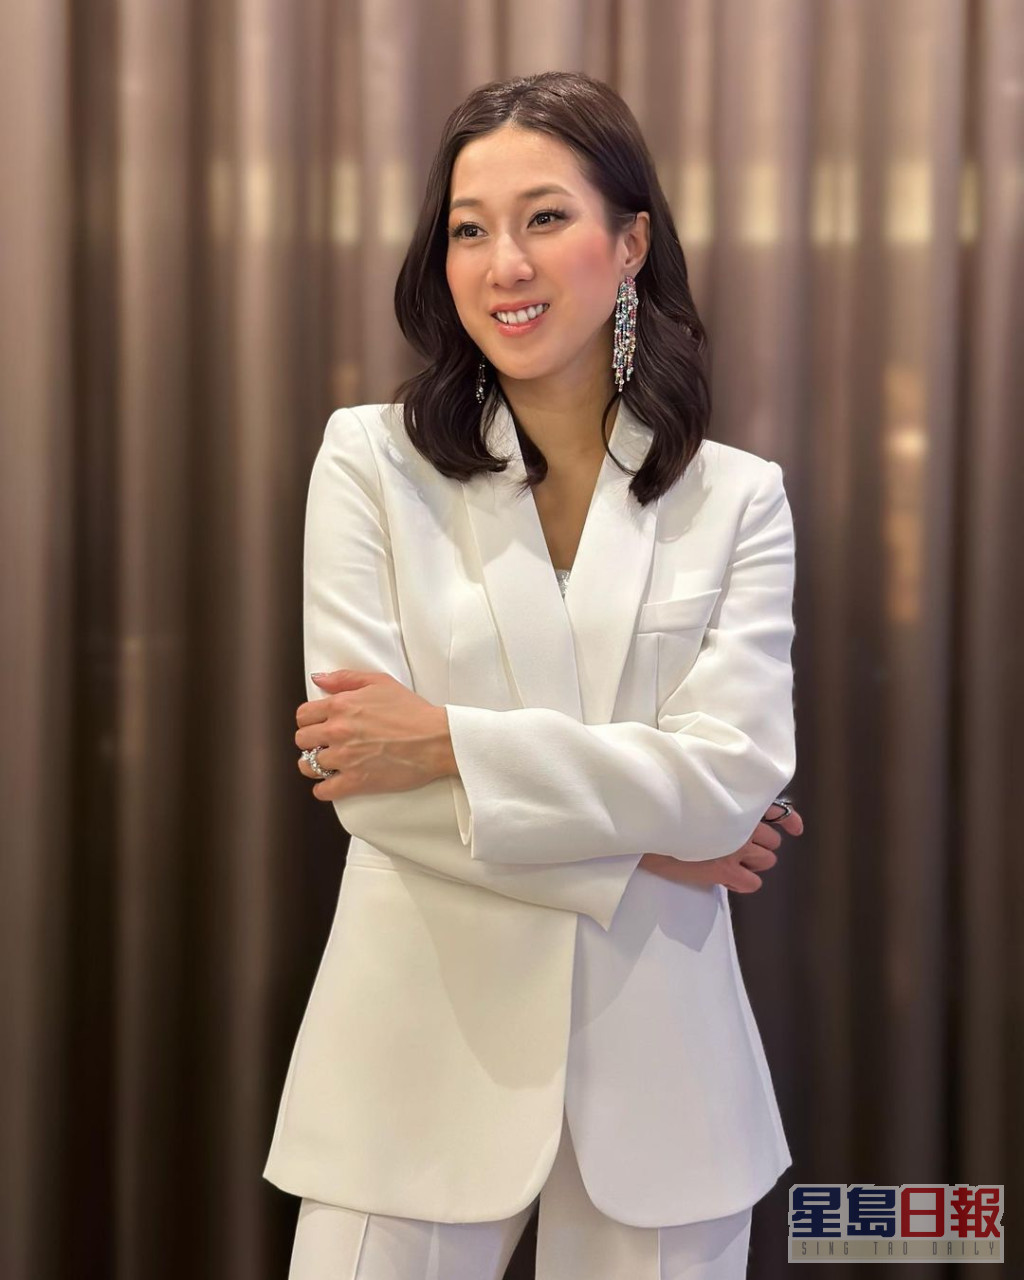 锺嘉欣今日在IG贴出登台的照片，换上白色西装的她转行知性路线。